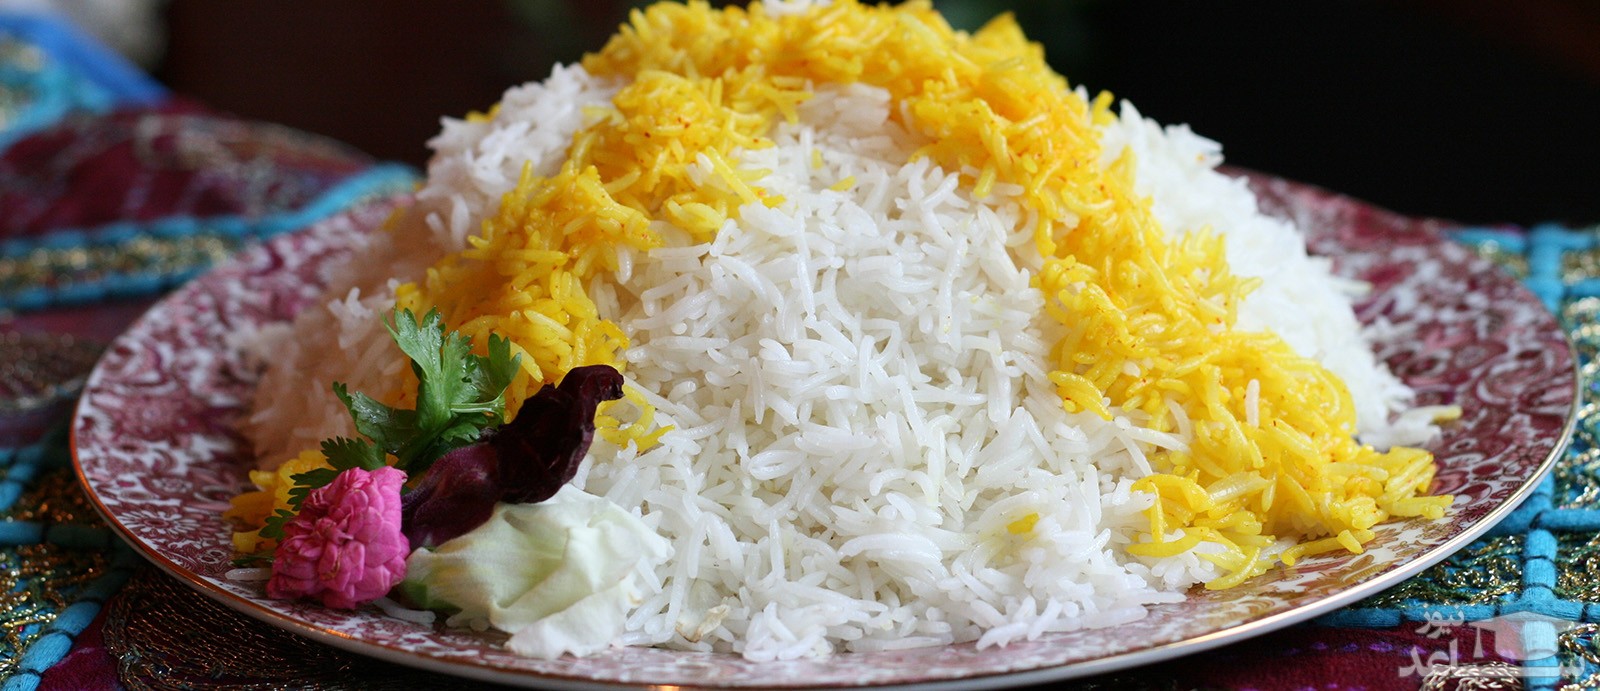 راهکارهایی برای رفع بوی سوختگی از برنج